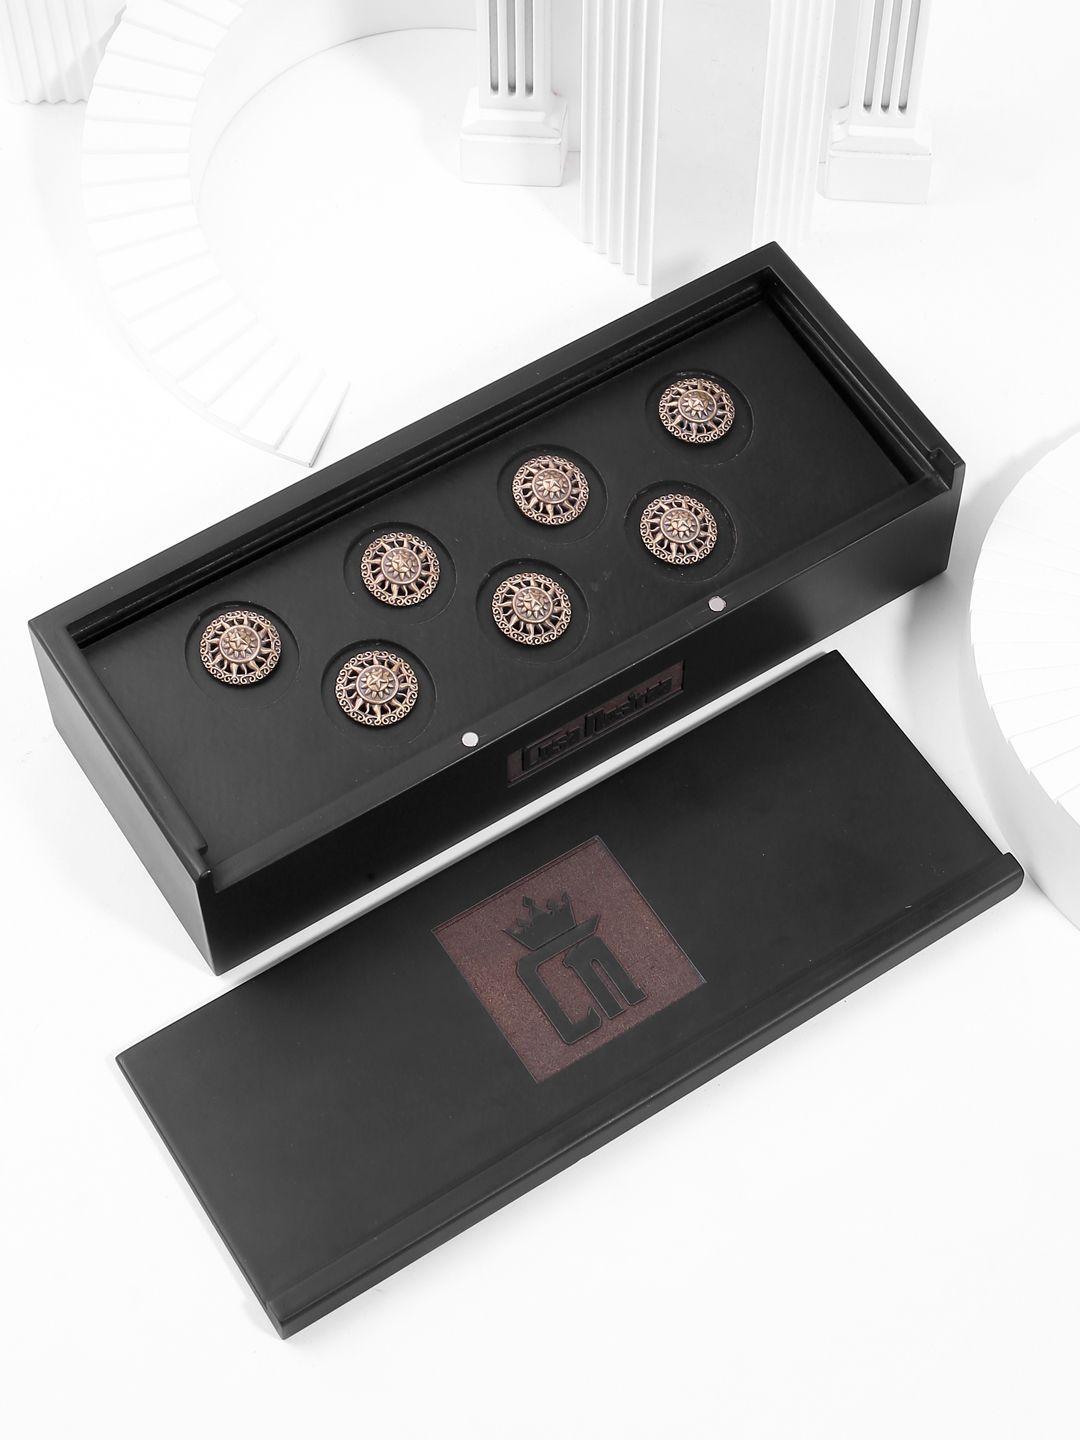 cosa nostraa set of 7 metallic the sun buttons cufflinks